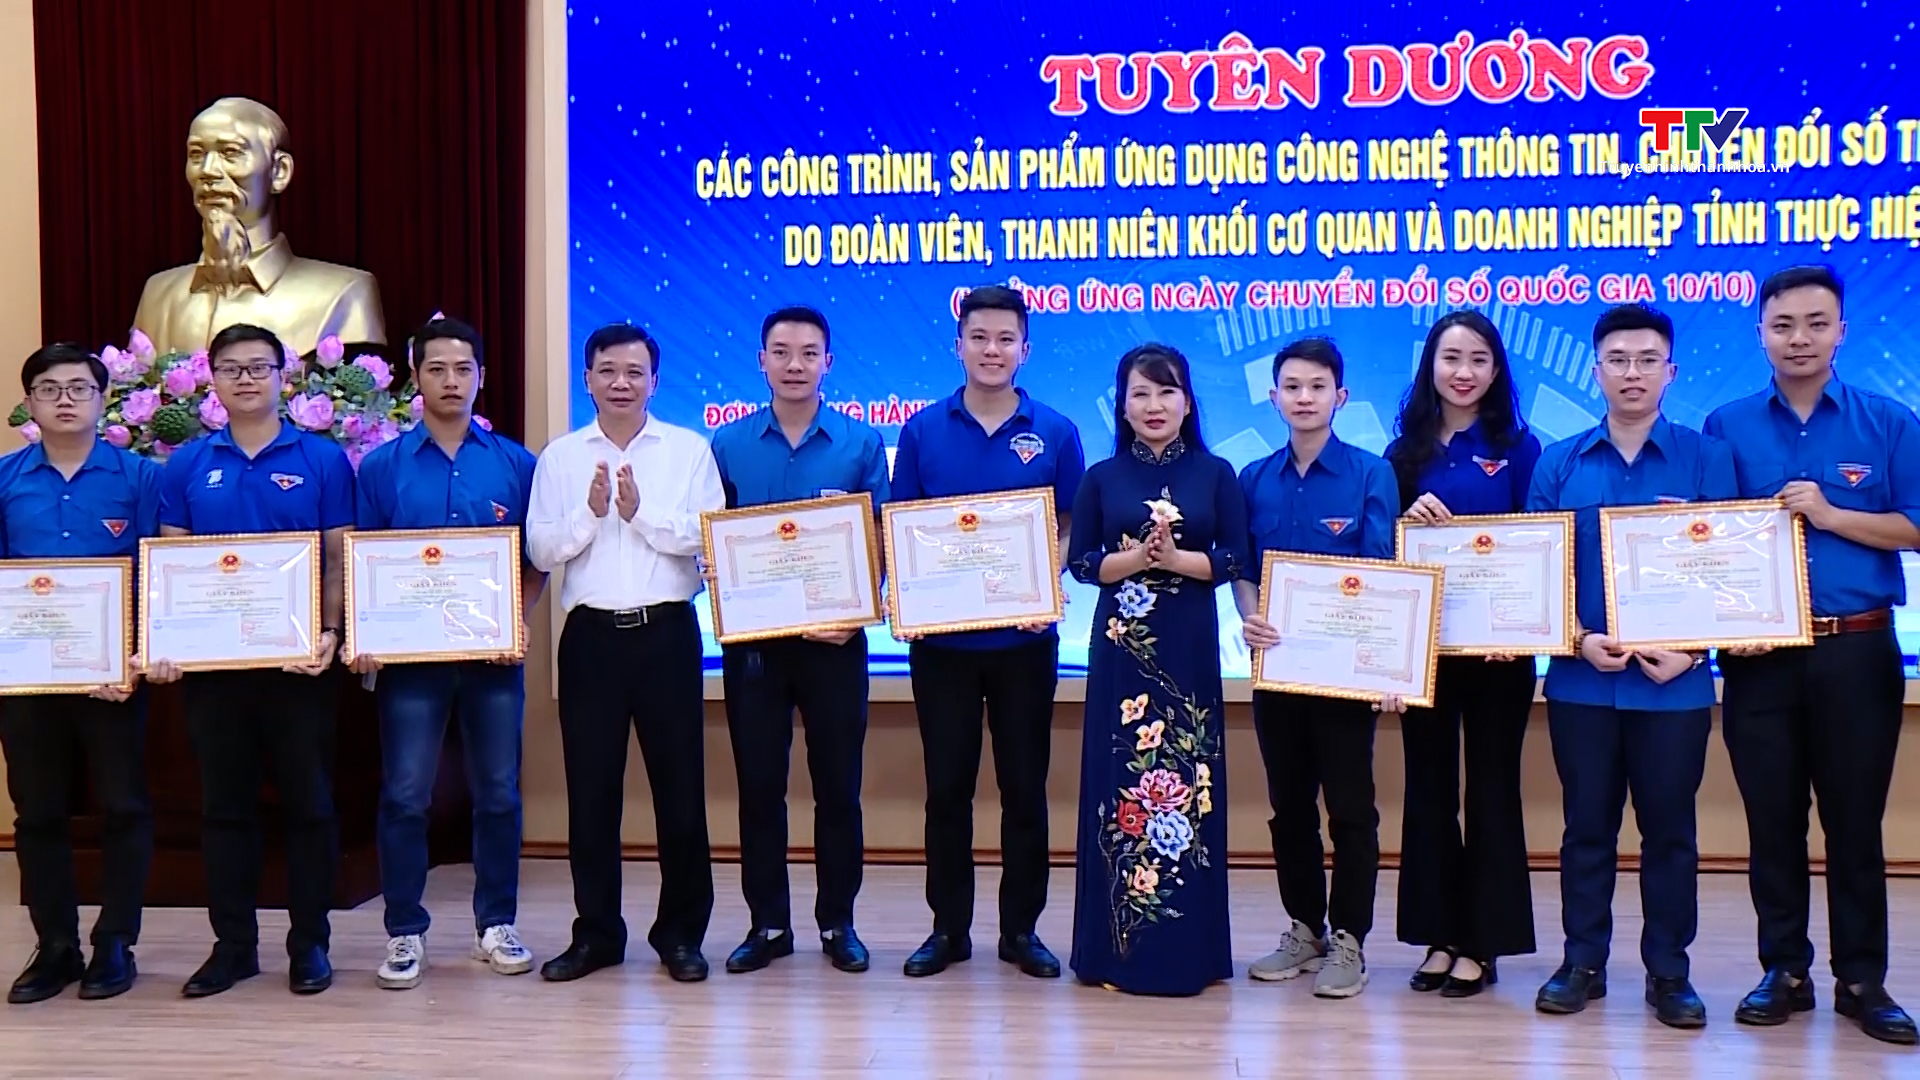 Tuổi trẻ Đoàn Khối Cơ quan và Doanh nghiệp tỉnh Thanh Hóa với chuyển đổi số - Ảnh 3.